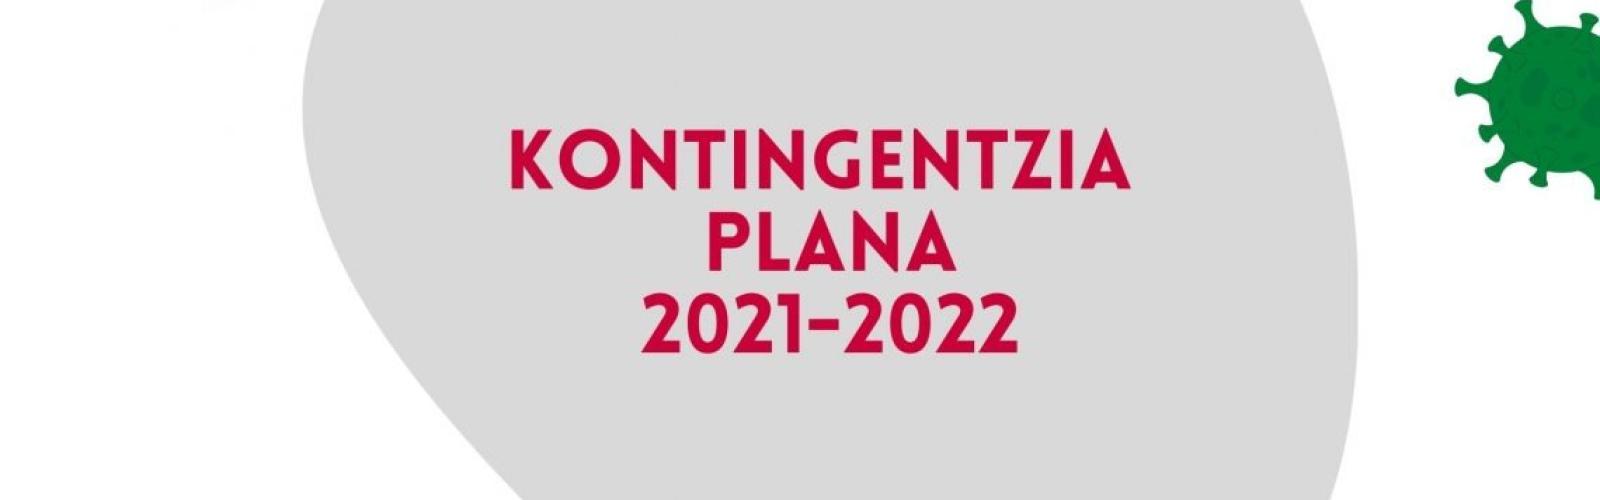 2021-2022 ikasturterako kontingentzia-plana